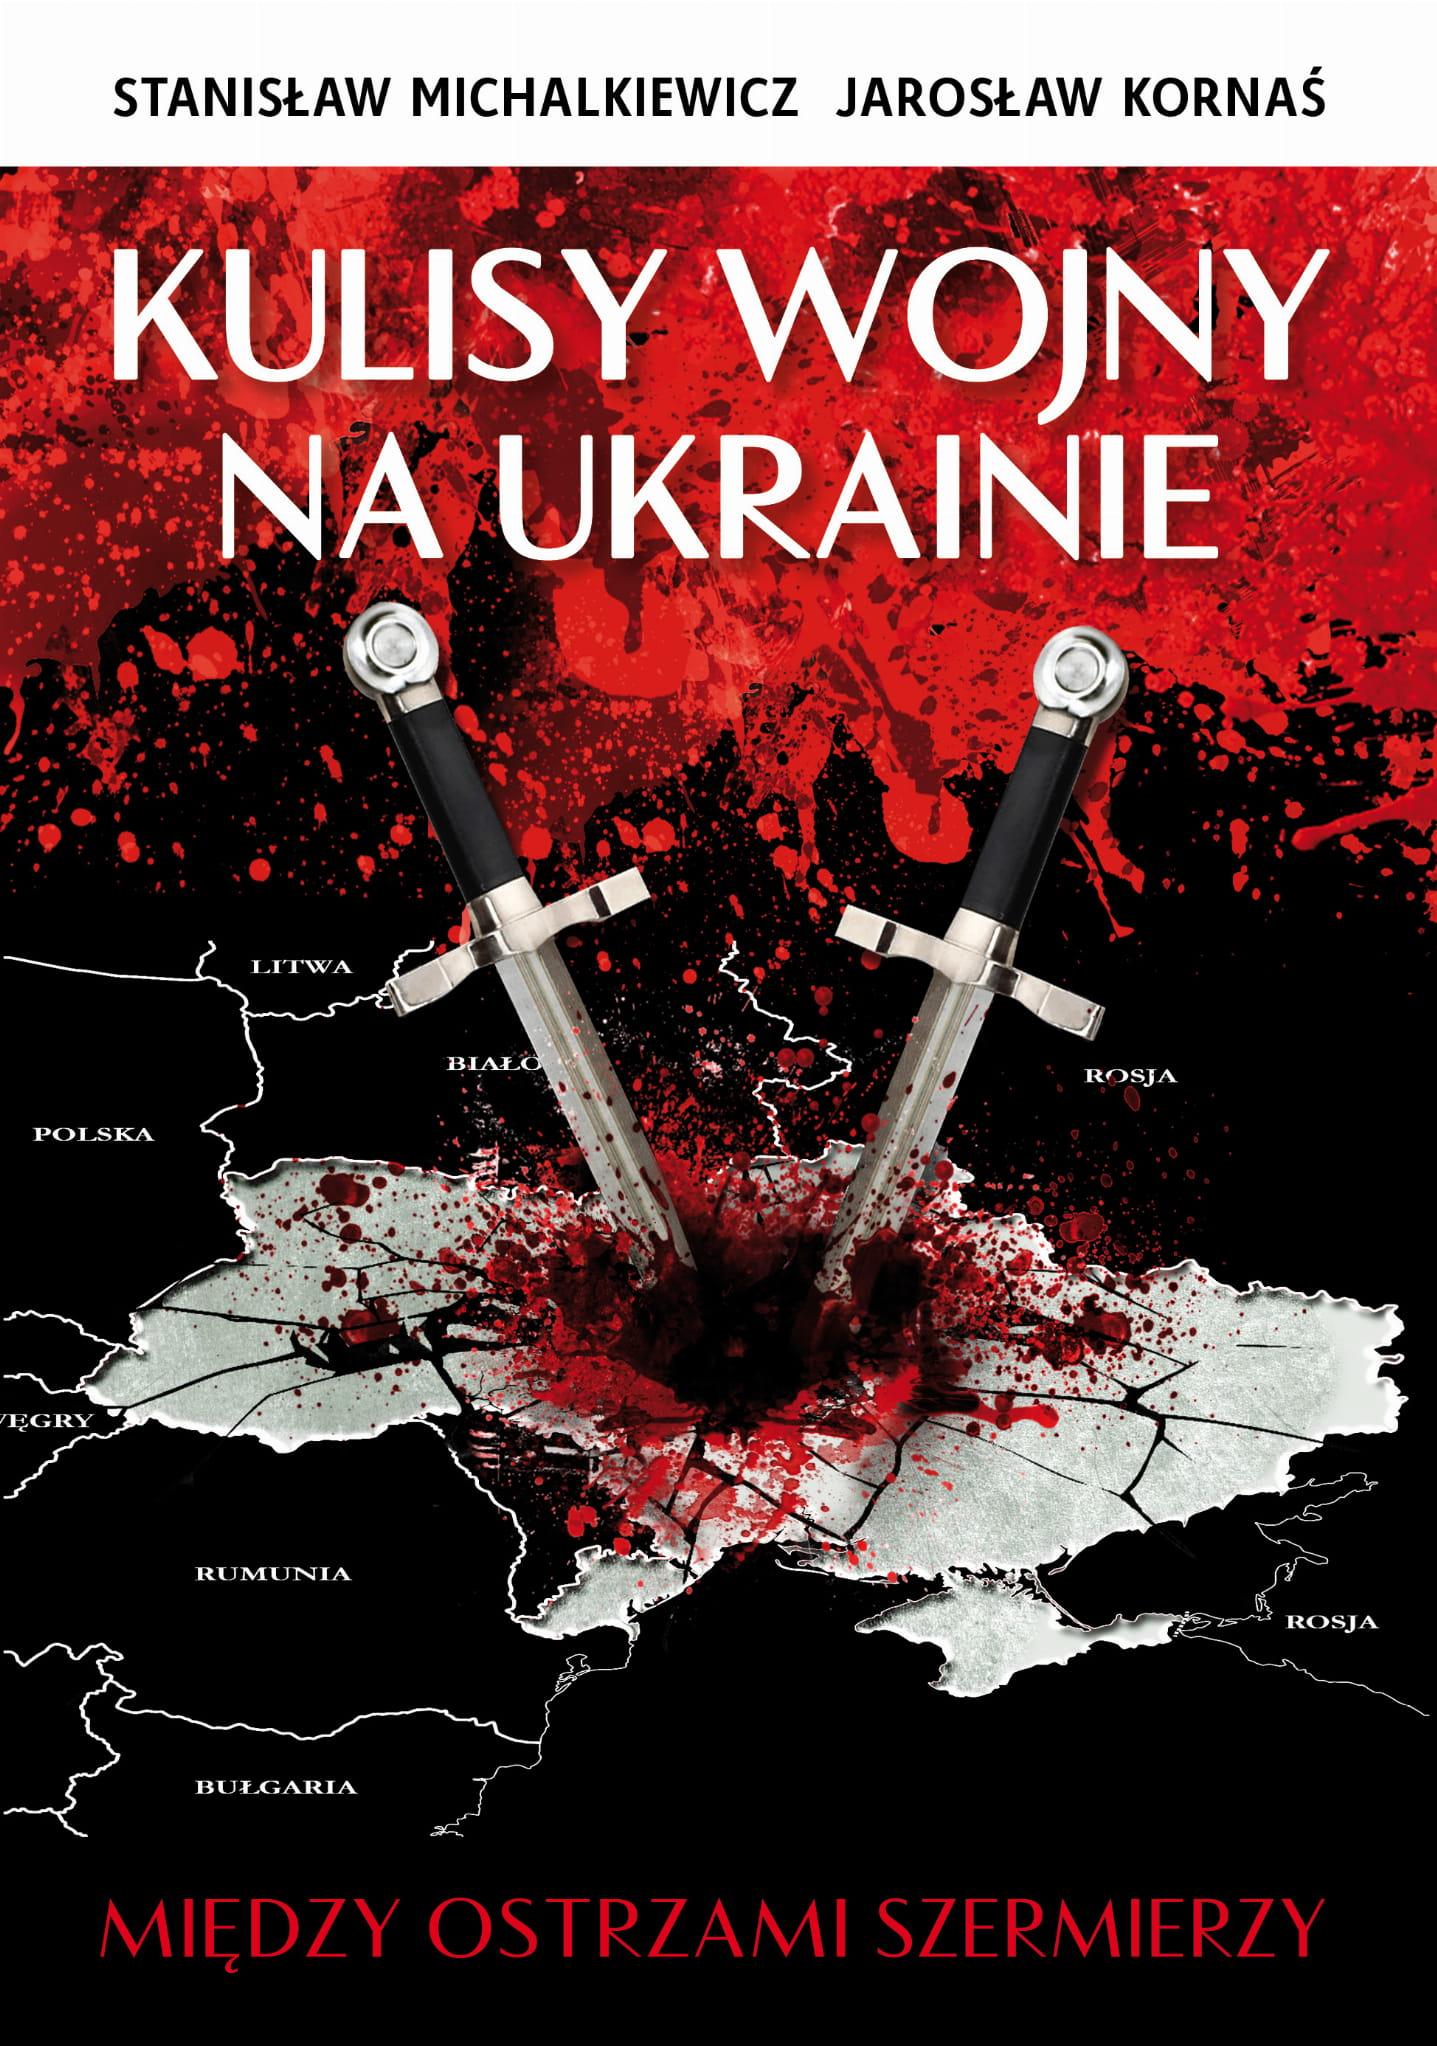 Kulisy wojny na Ukrainie (St.Michalkiewicz J.Kornaś)